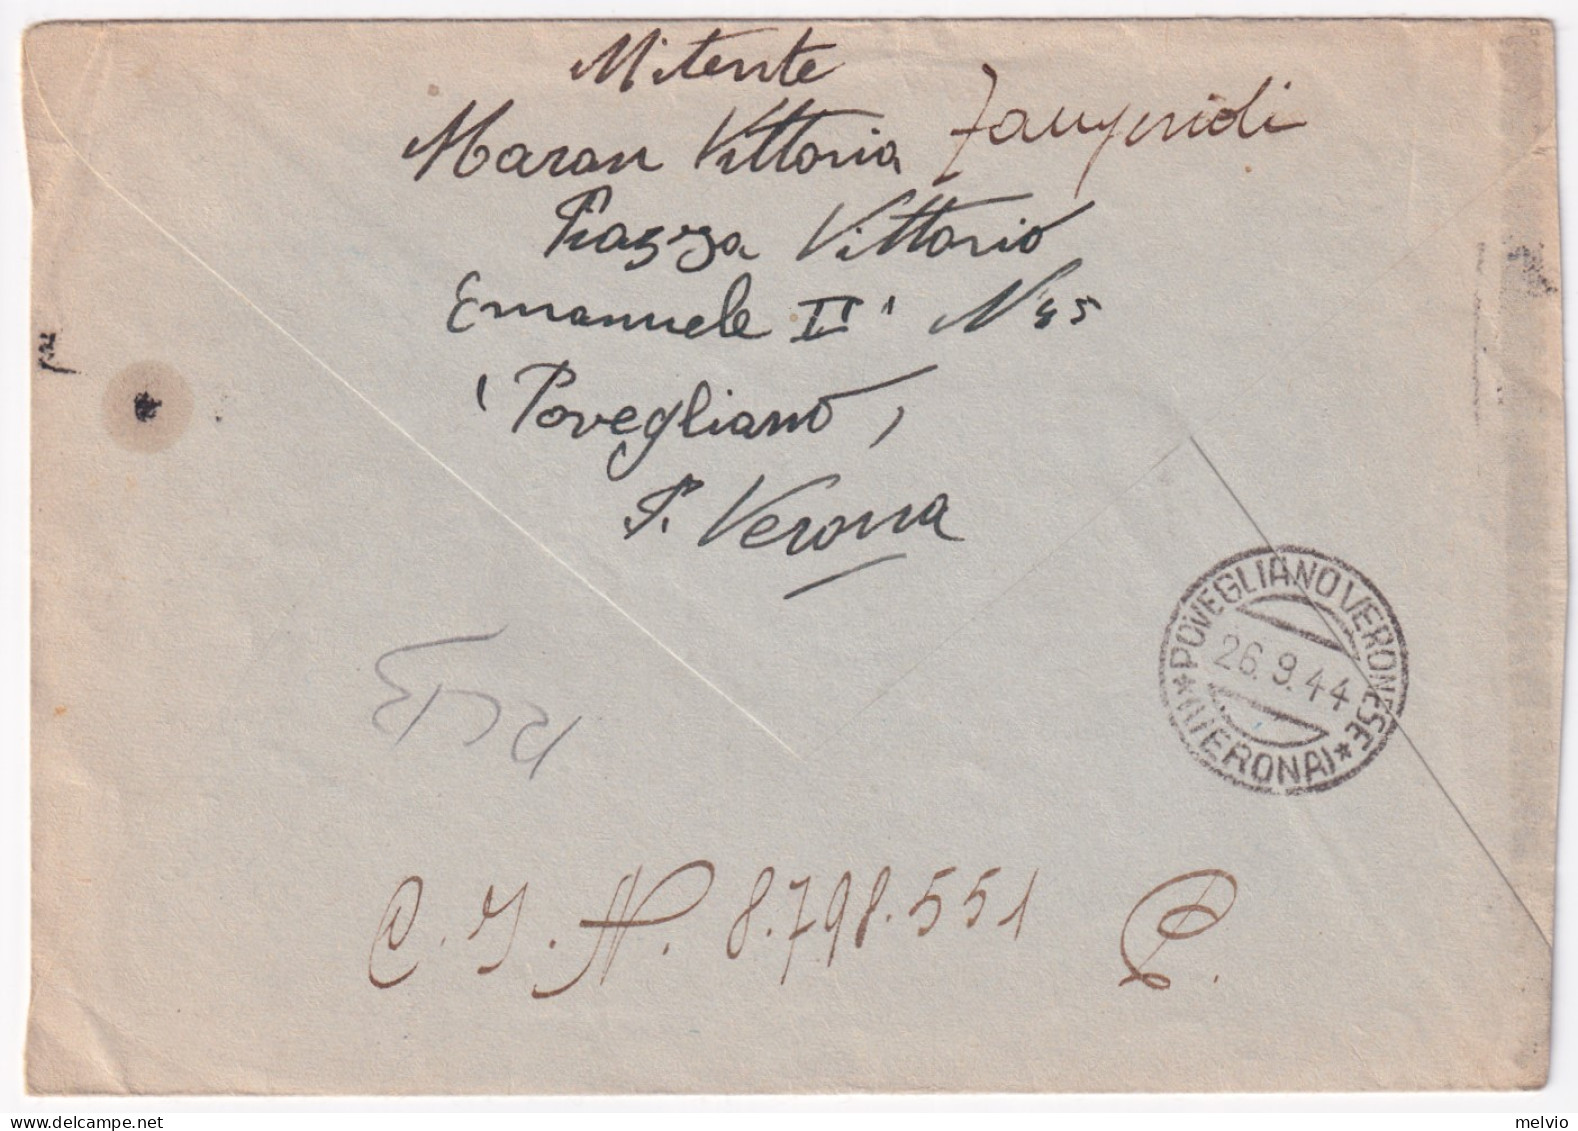 1944-Imperiale Sopr. RSI Lire 1,25 (495) Isolato Su Busta Povegliano (26.9) Per  - Marcophilia